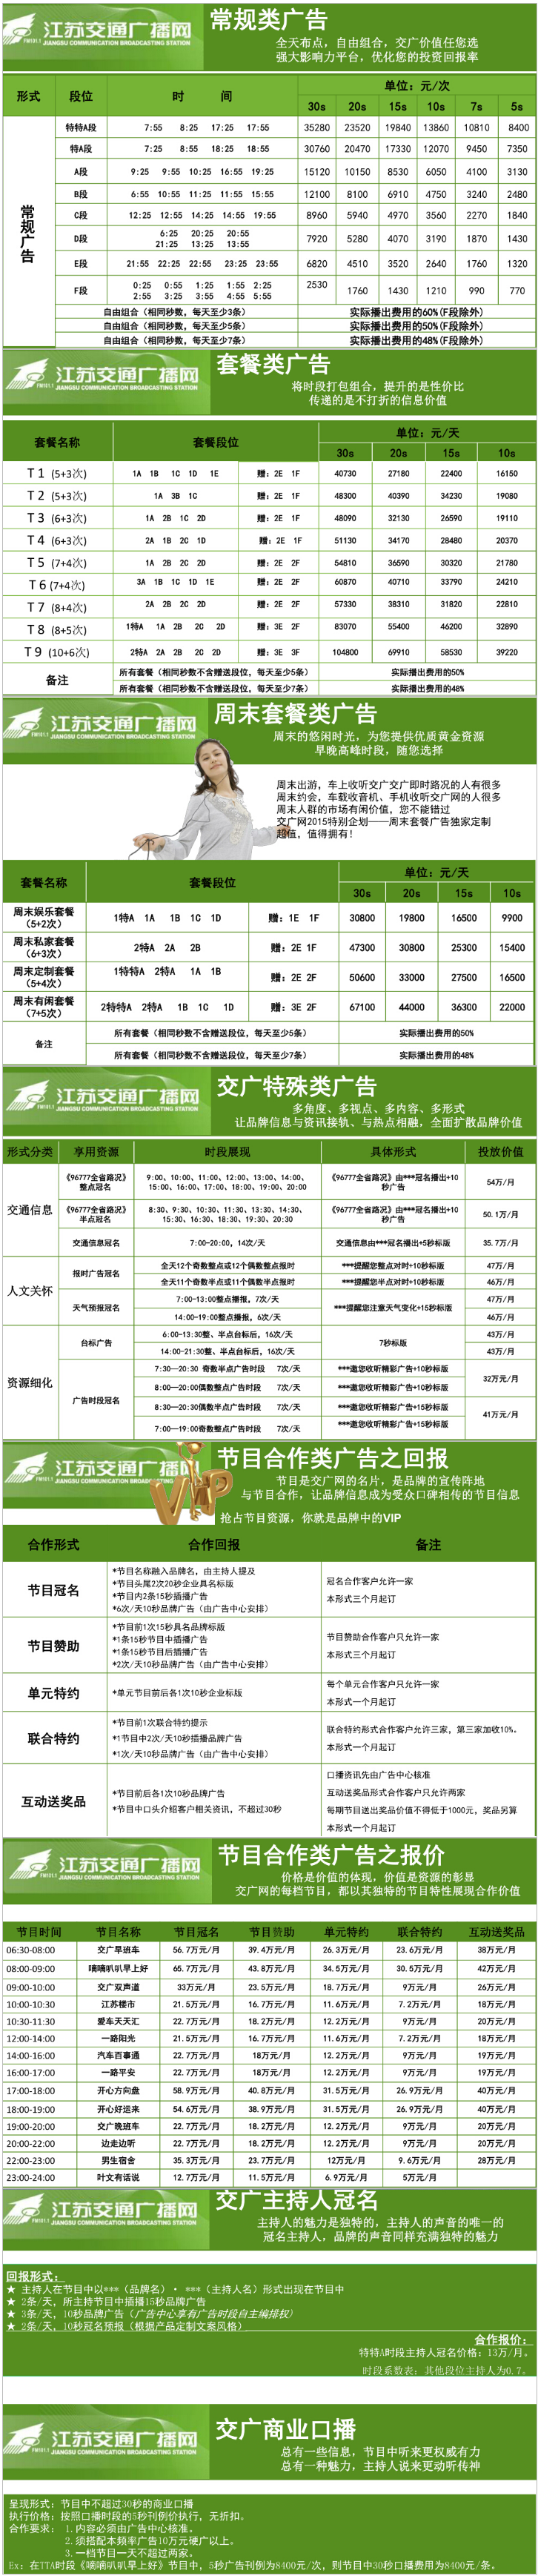 2015江苏人民广播电台交通台 FM101.1广告报价表.png